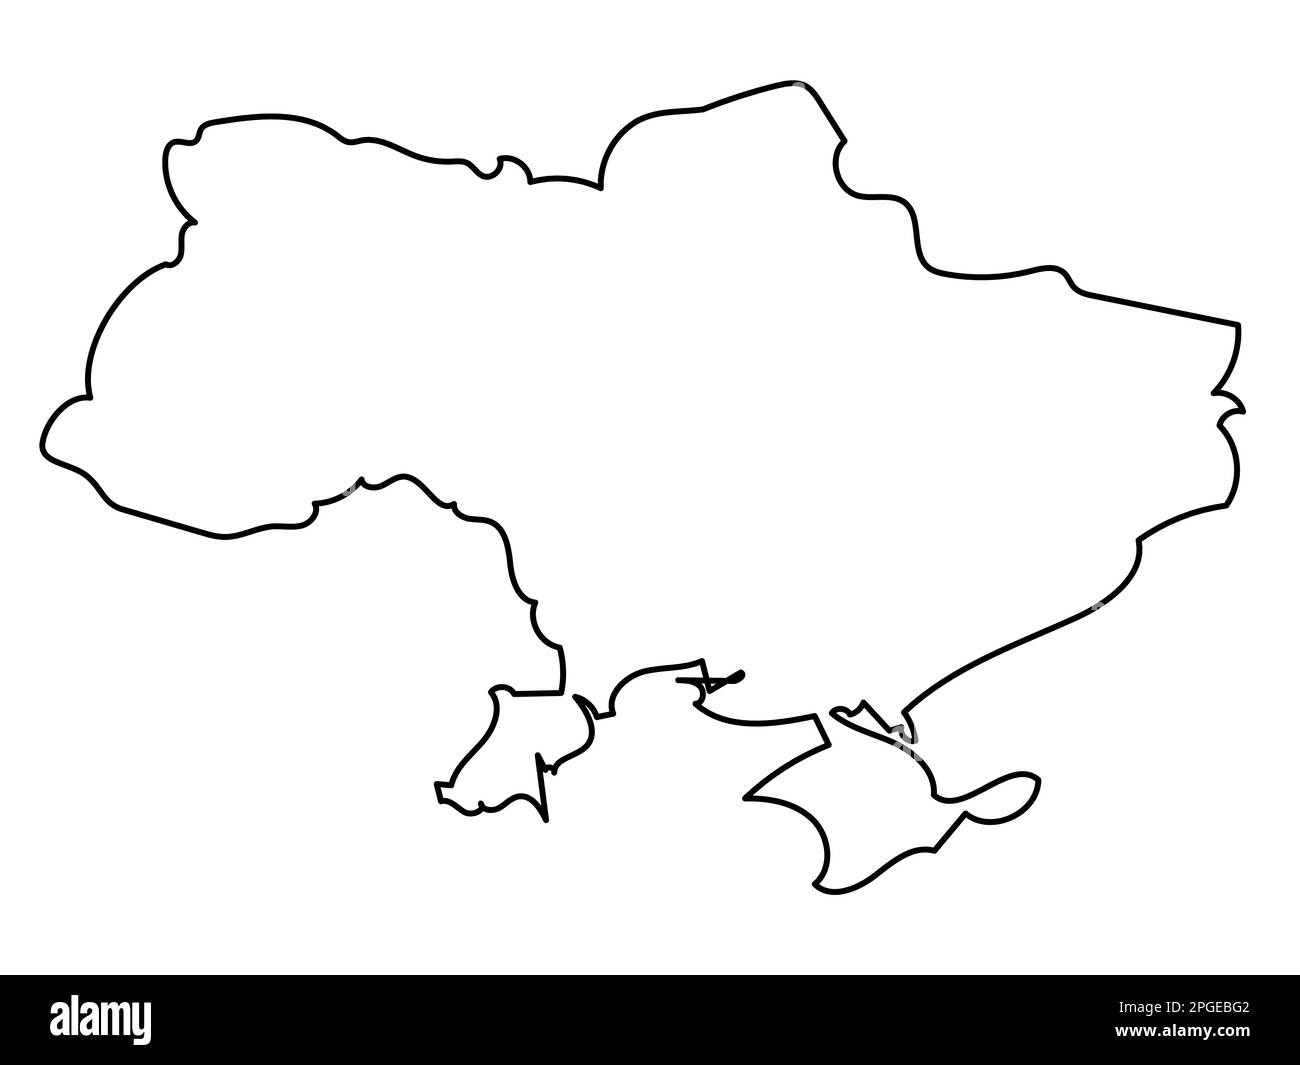 Linienkarte der Ukraine auf weißem Hintergrund. Grundriss des ukrainischen Staates seit 1991. Vektor-Rohteilsymbol. Stock Vektor